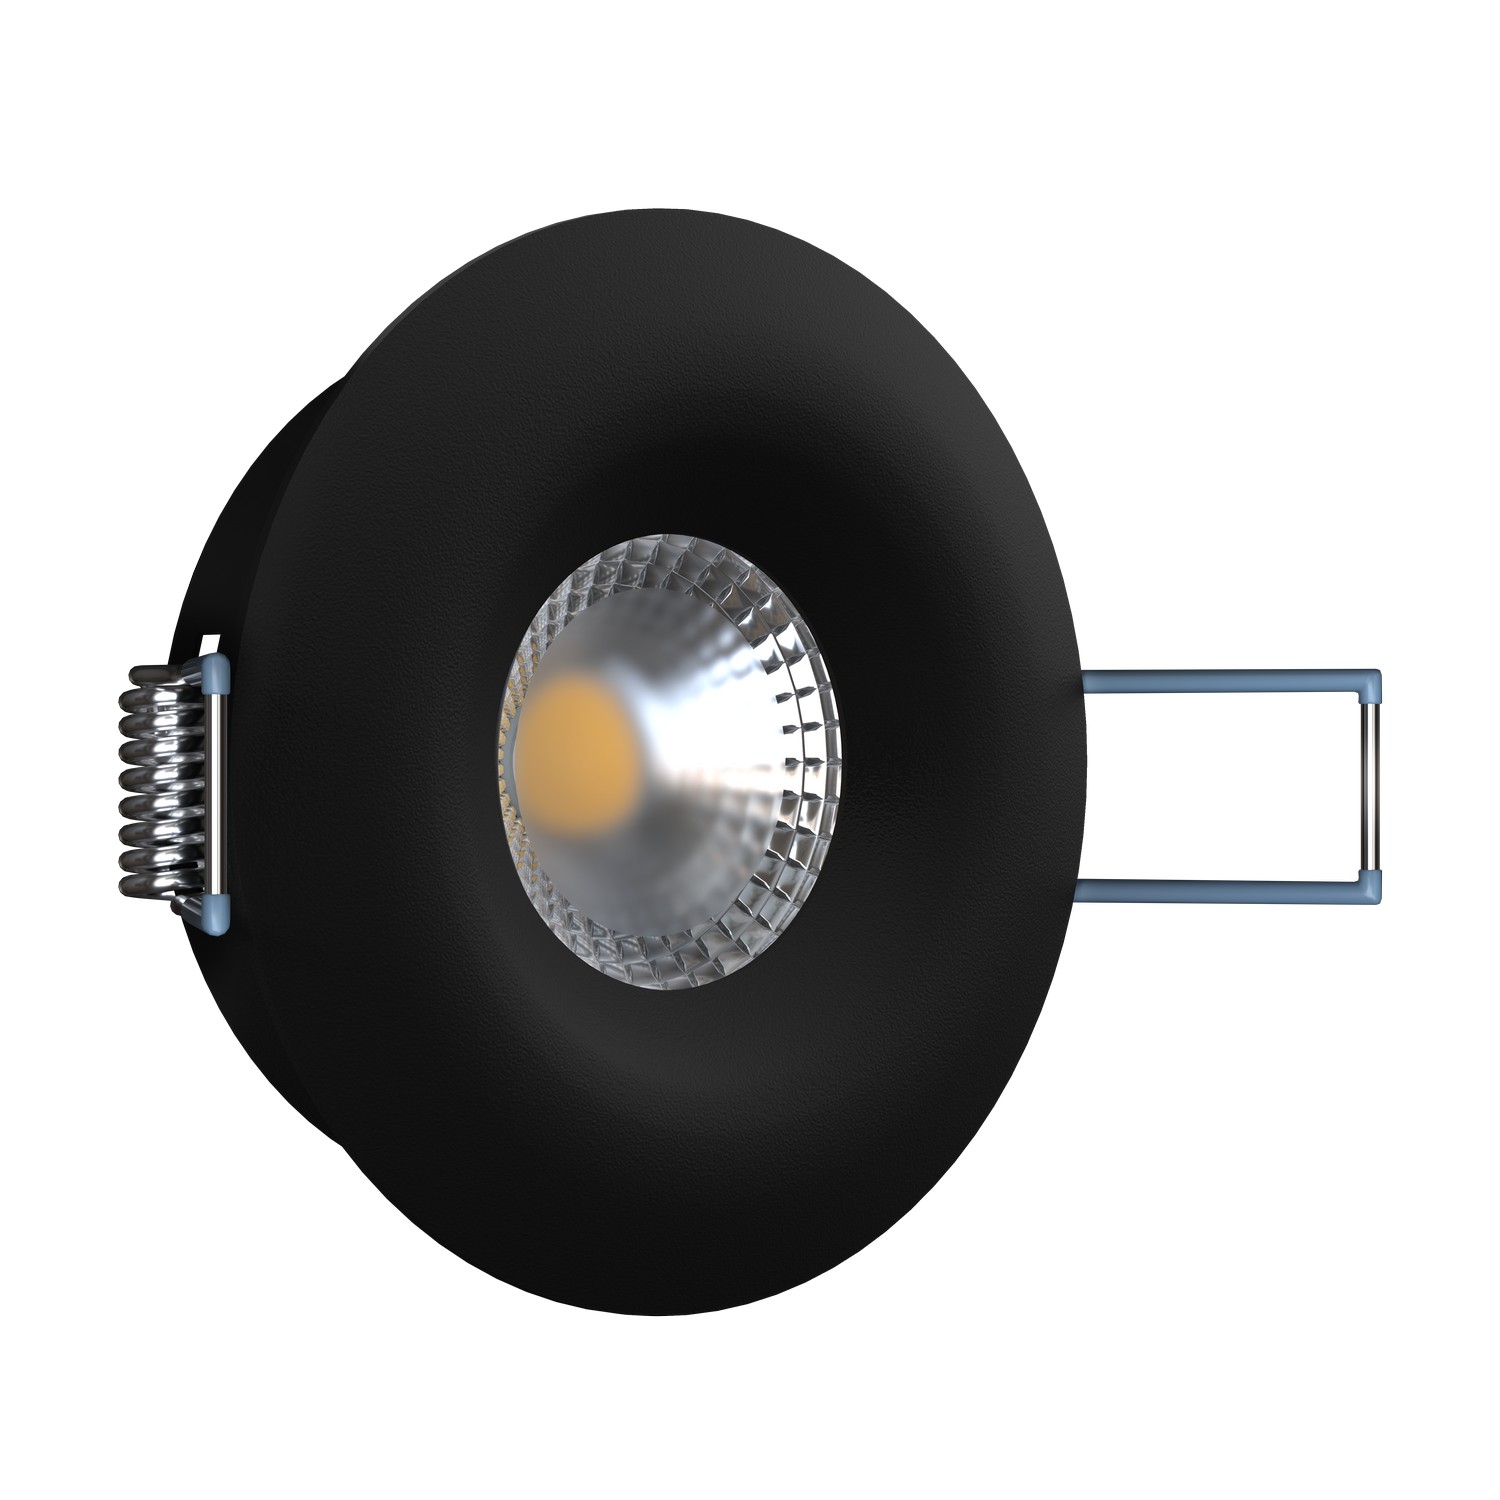 Светильник встраиваемый AO1501002 Black (круглый)            Ledron